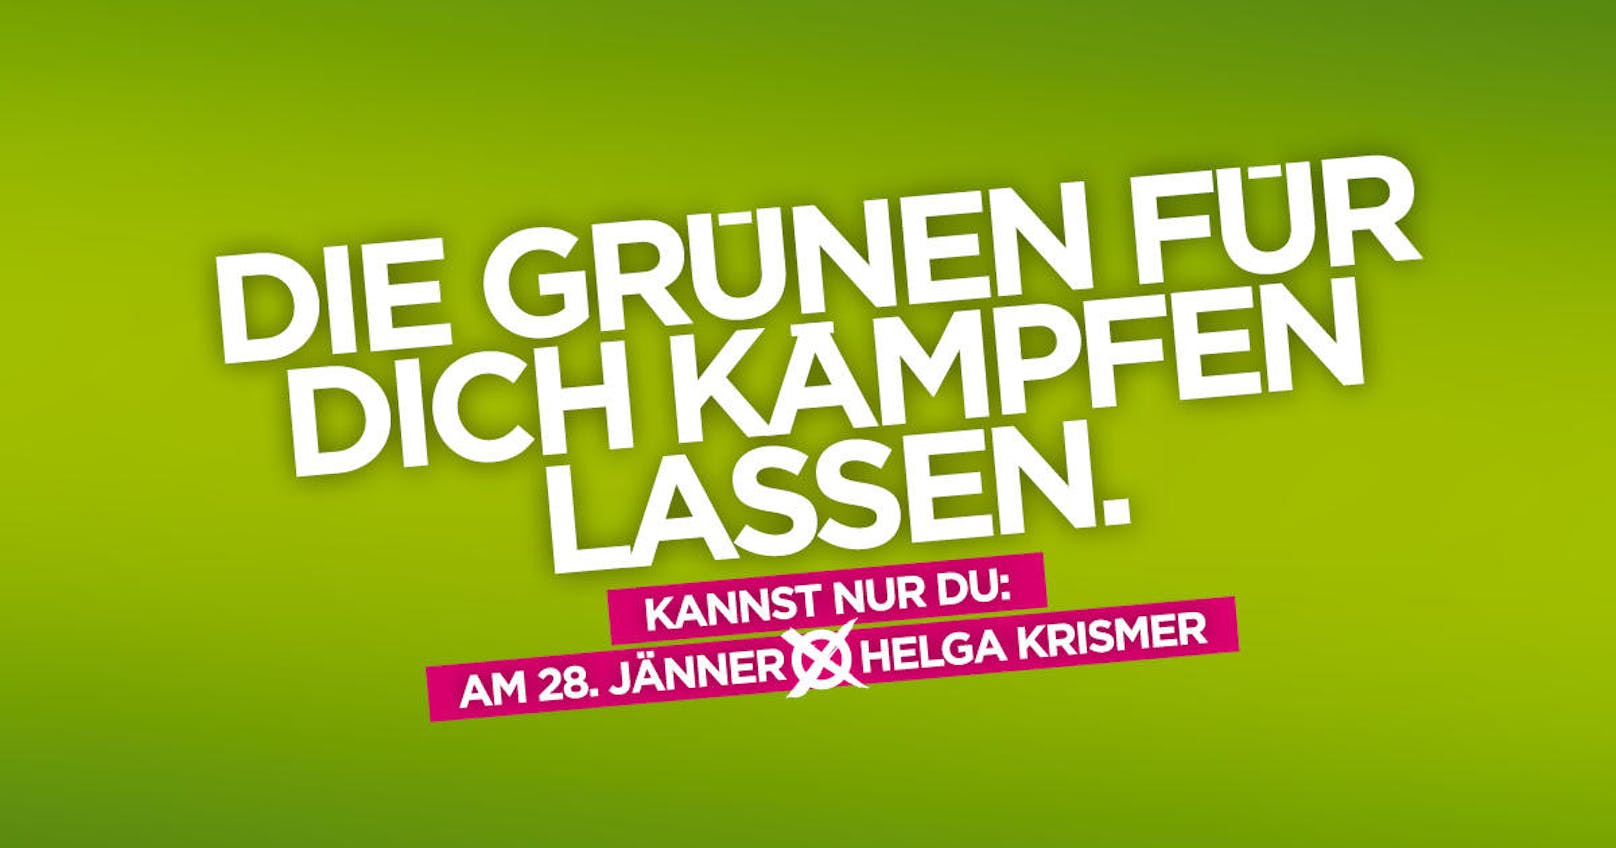 So werben die Grünen in Niederösterreich um die Wählergunst.